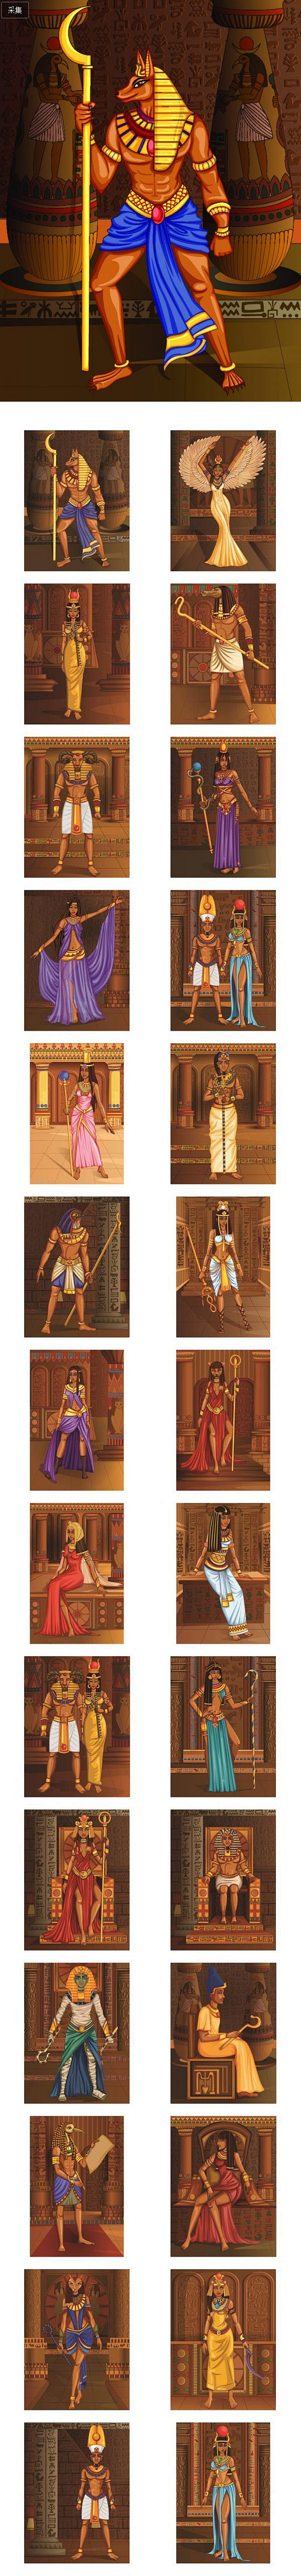 古埃及法老女王壁画神话人物肖像插画高清矢...